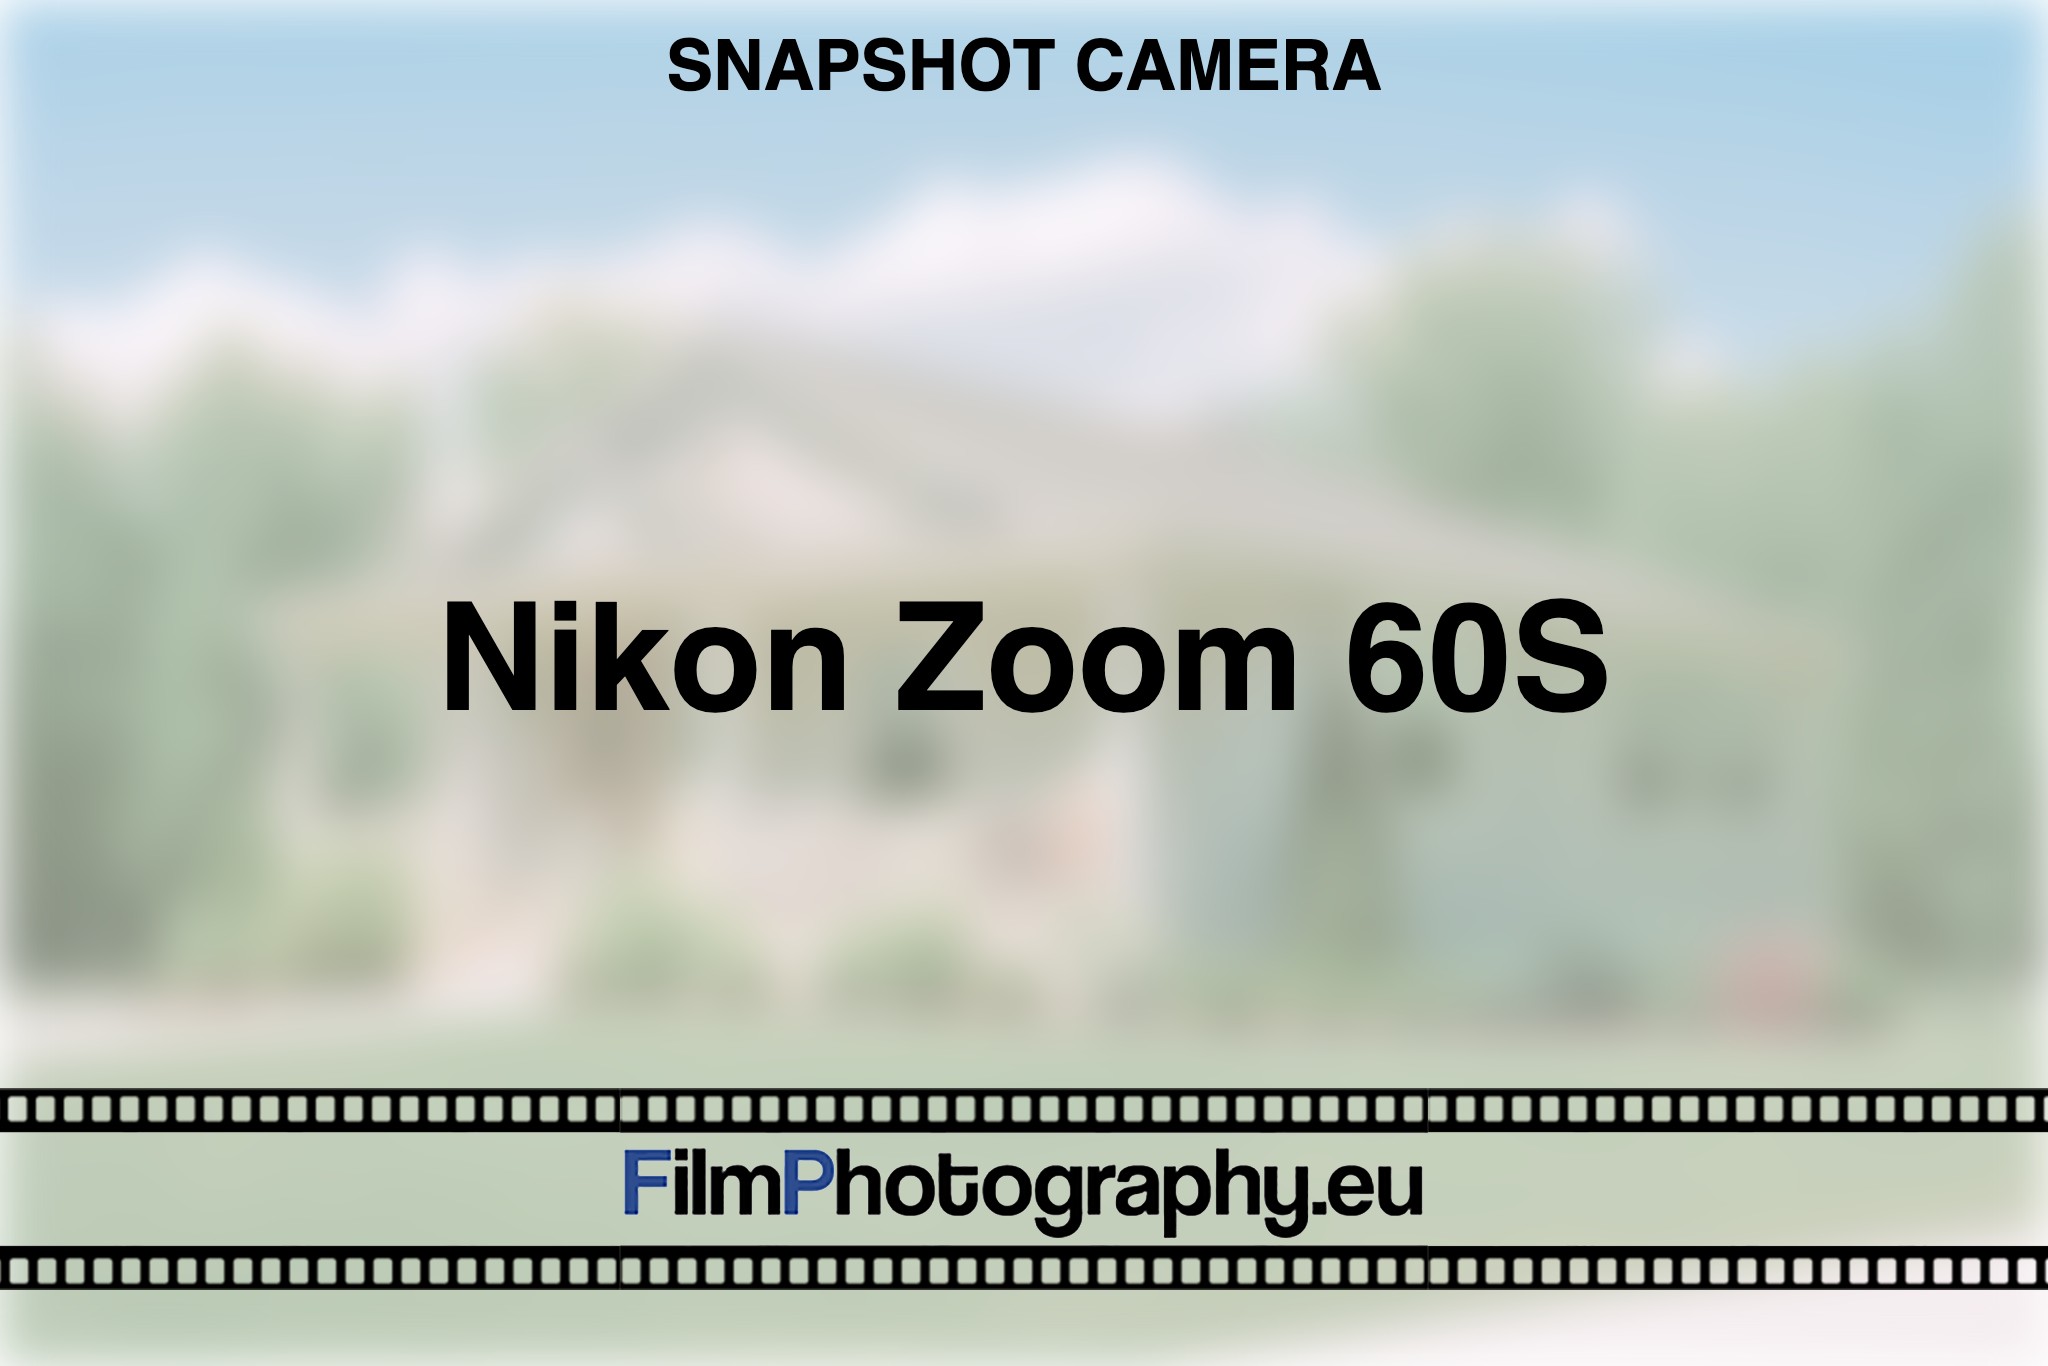 nikon-zoom-60s-snapshot-camera-bnv